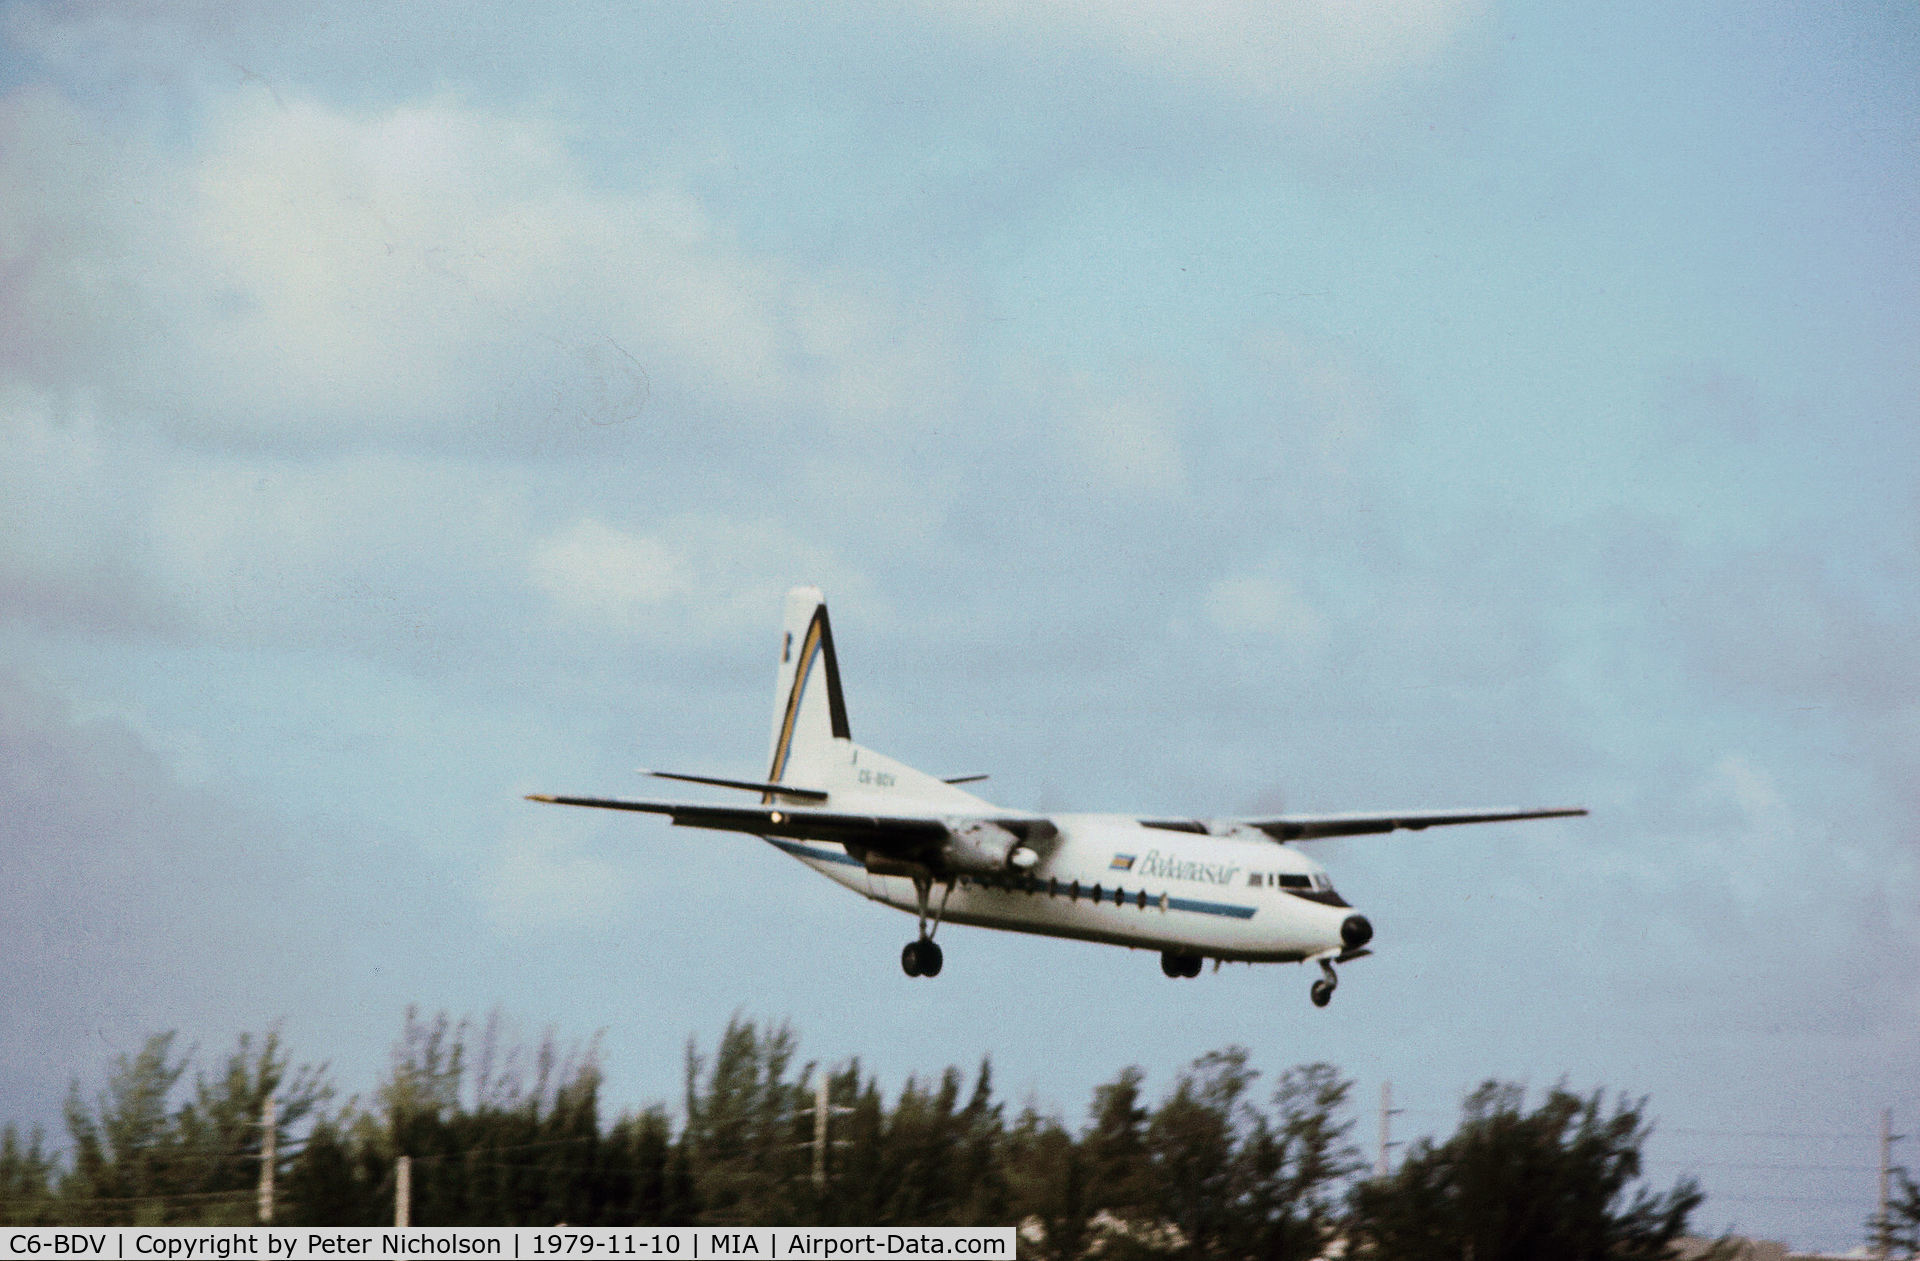 C6-BDV, 1966 Fairchild Hiller FH-227E C/N 509, FH-227E Friendship of Bahamasair on final approach to Miami in November 1979.